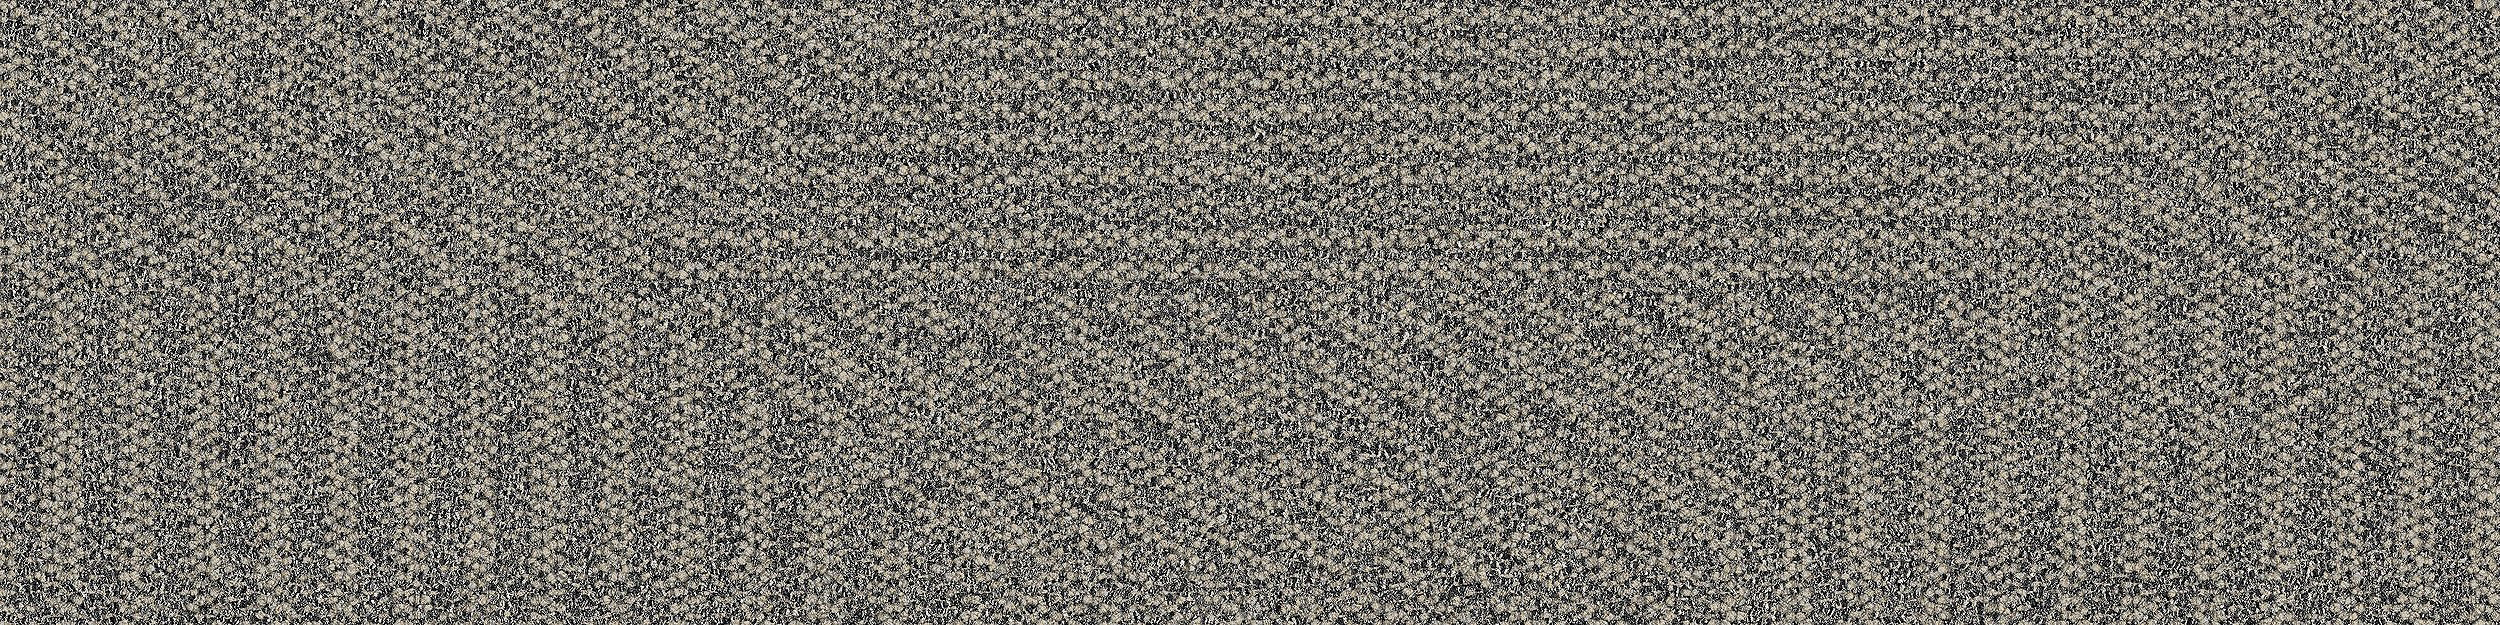 Open Air 407 Carpet Tile In Natural numéro d’image 6